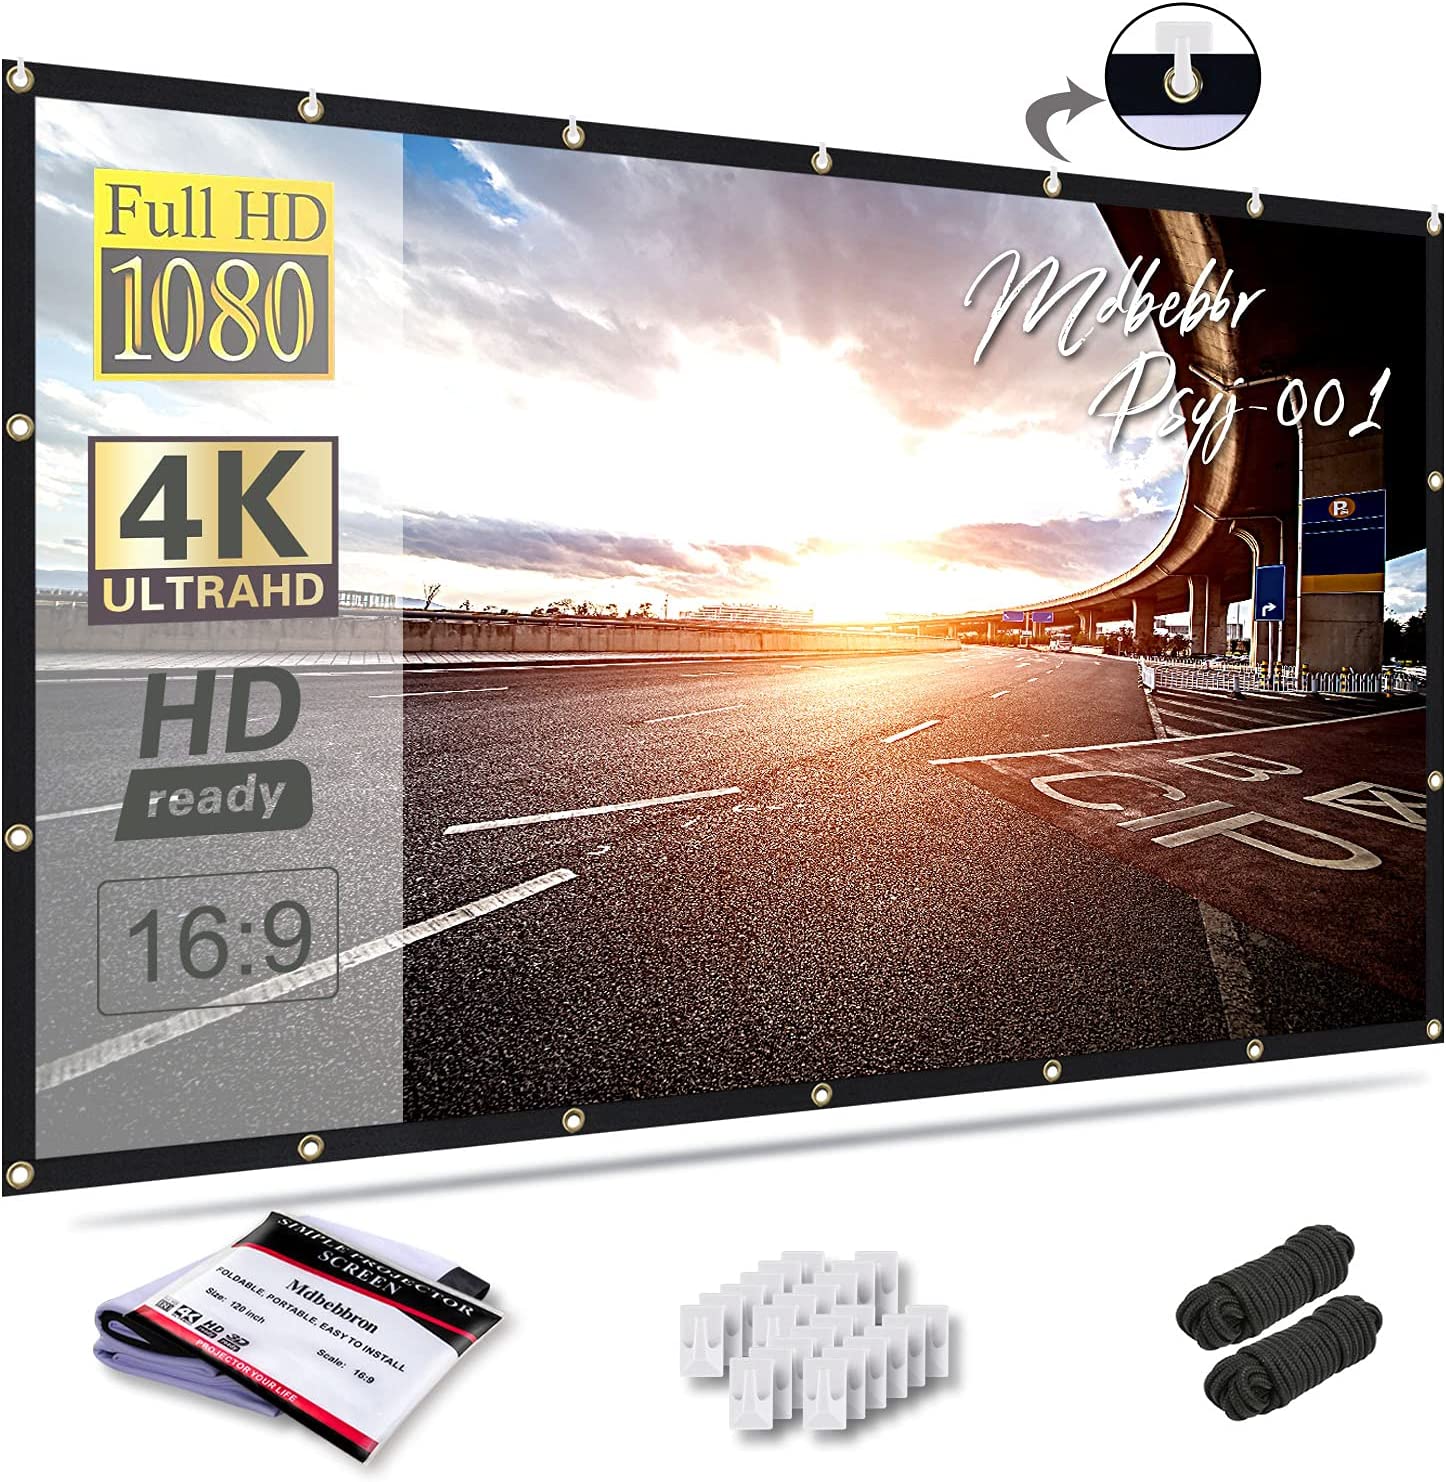 Universal - Moniteur portable 13.3 pouces double écran FHD 1080P